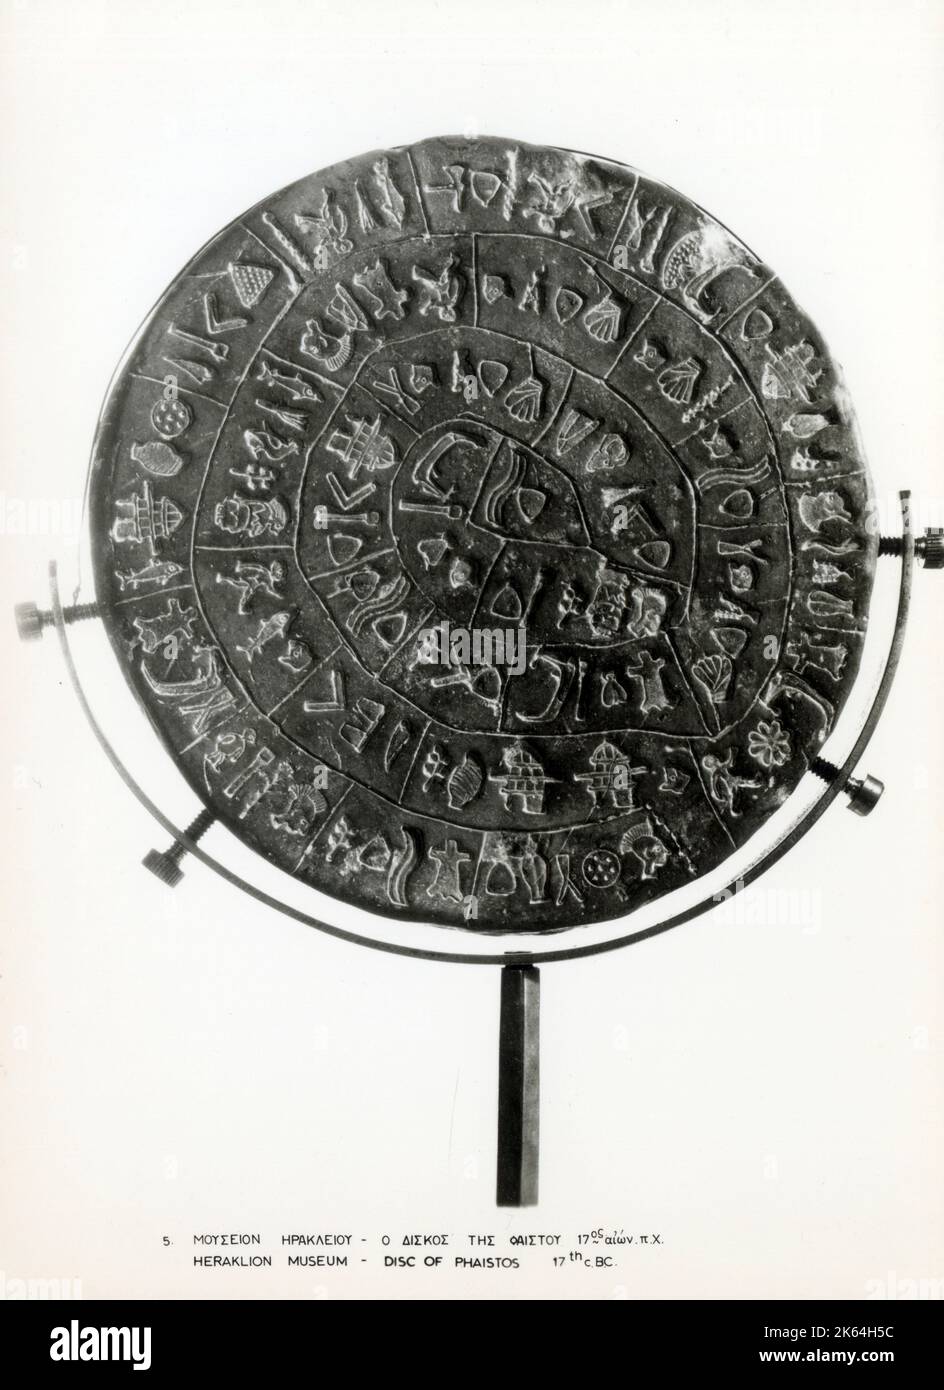 Il disco di Phaistos (anche scritto disco di Phaistos, disco di Phaestos) è un disco di argilla cotta proveniente dal palazzo minoico di Phaistos sull'isola di Creta, forse risalente alla metà o alla fine dell'età del bronzo minoica (secondo millennio a.C.). Il disco ha un diametro di circa 15 cm (5,9 poll.) e è coperto su entrambi i lati da una spirale di simboli stampati. Il disco di Phaistos è stato scoperto nel palazzo minoico di Phaistos, vicino a Hagia Triada, sulla costa meridionale di Creta. Data: Circa 2500 a.C. Foto Stock